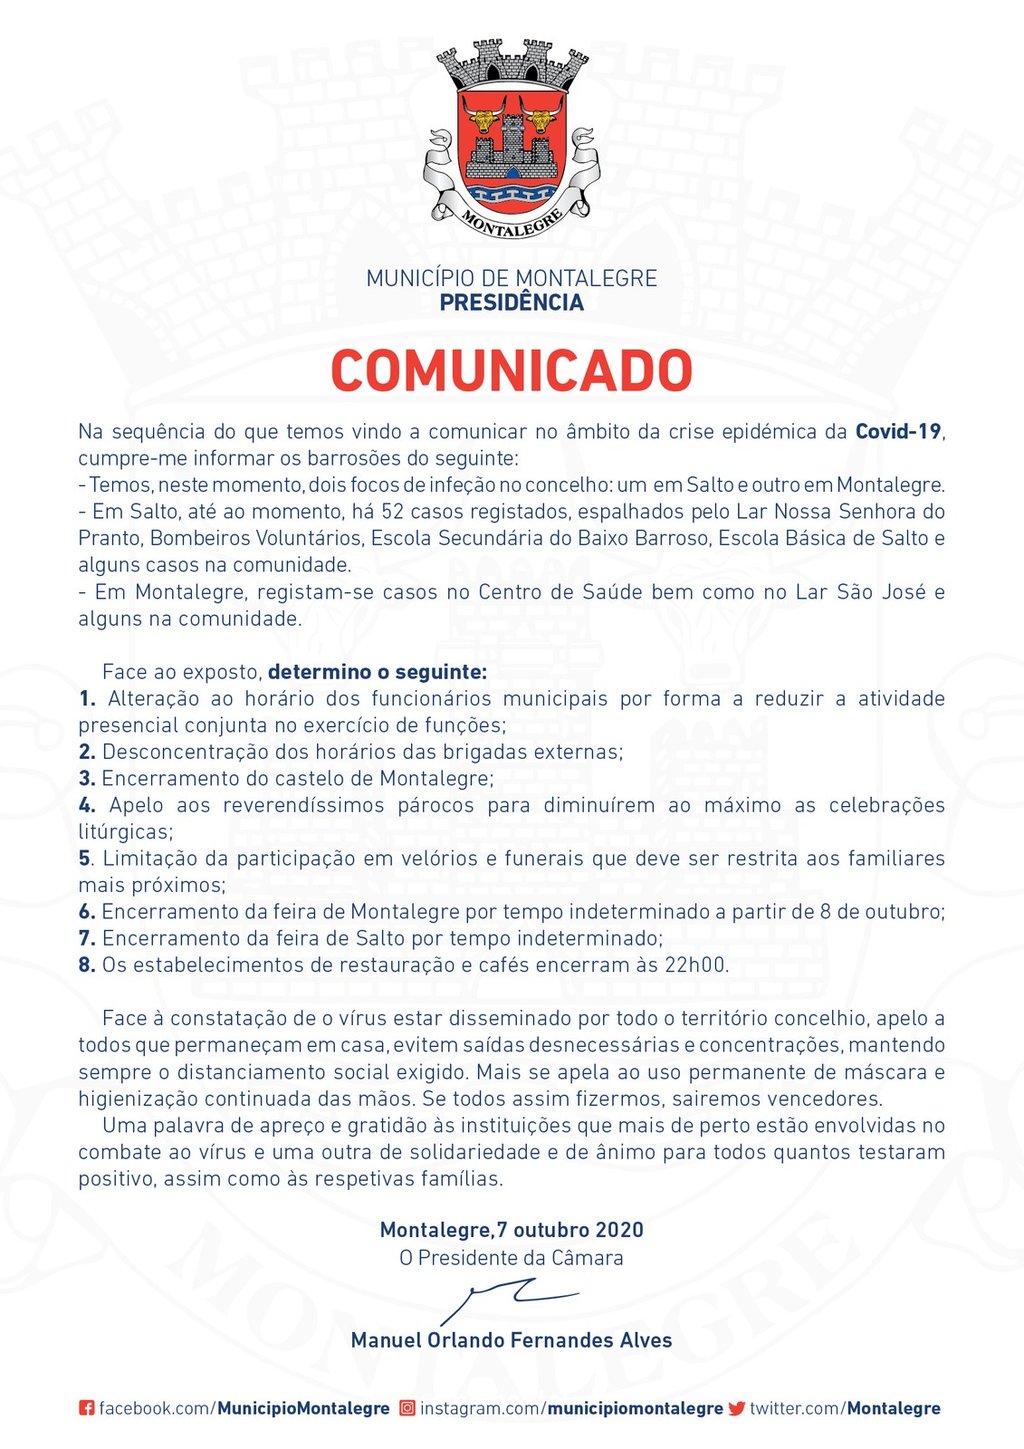 Municipio de montalegre   comunicado   07 outubro 2020 1 1024 2500